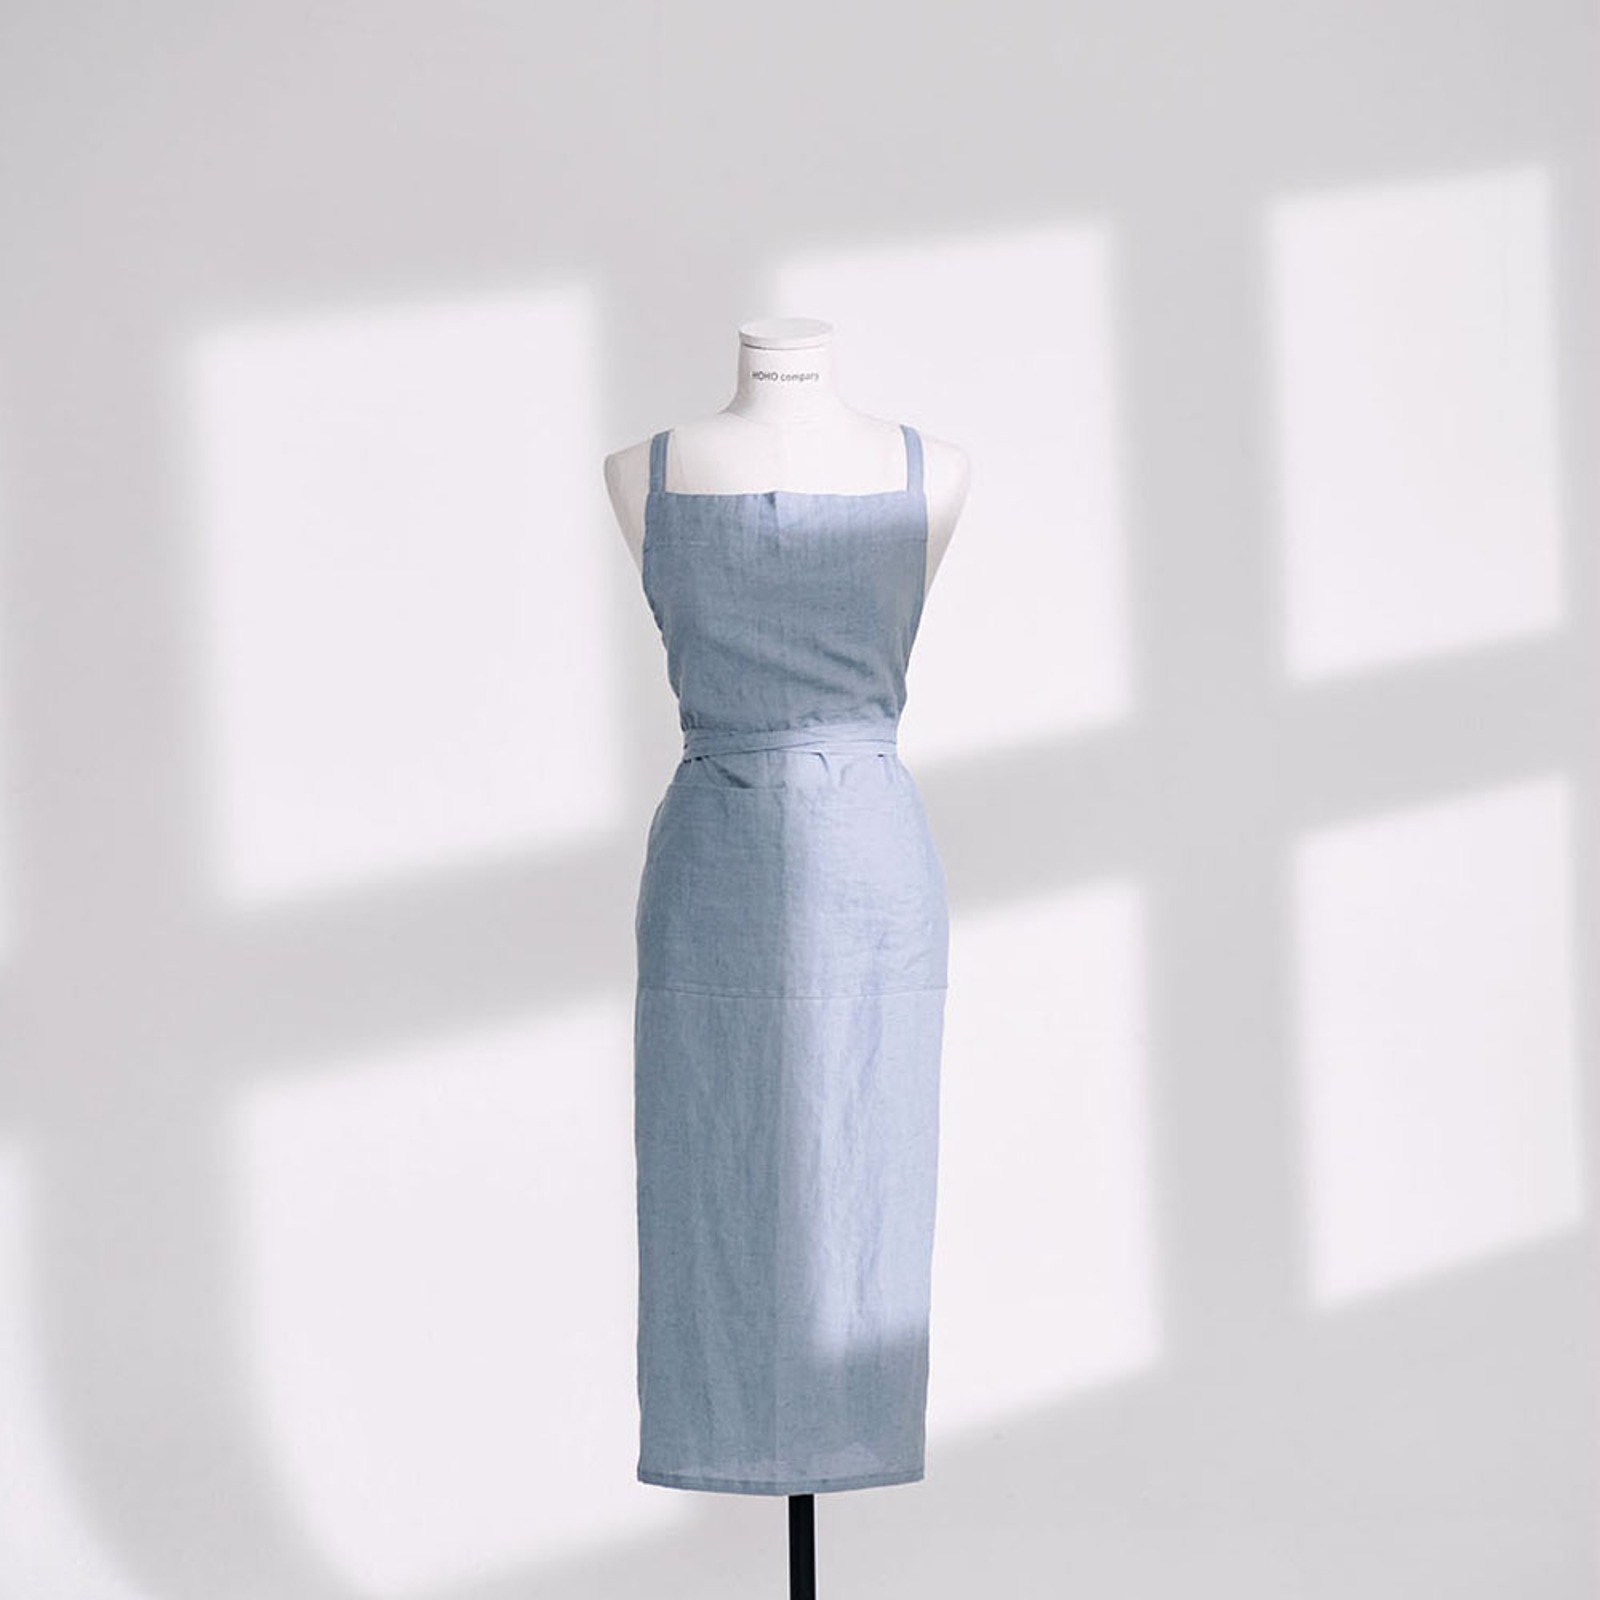 챕터원,[Spring fabric collection, 10%] 프리미엄 린넨 에이프런_그레이시 오션블루